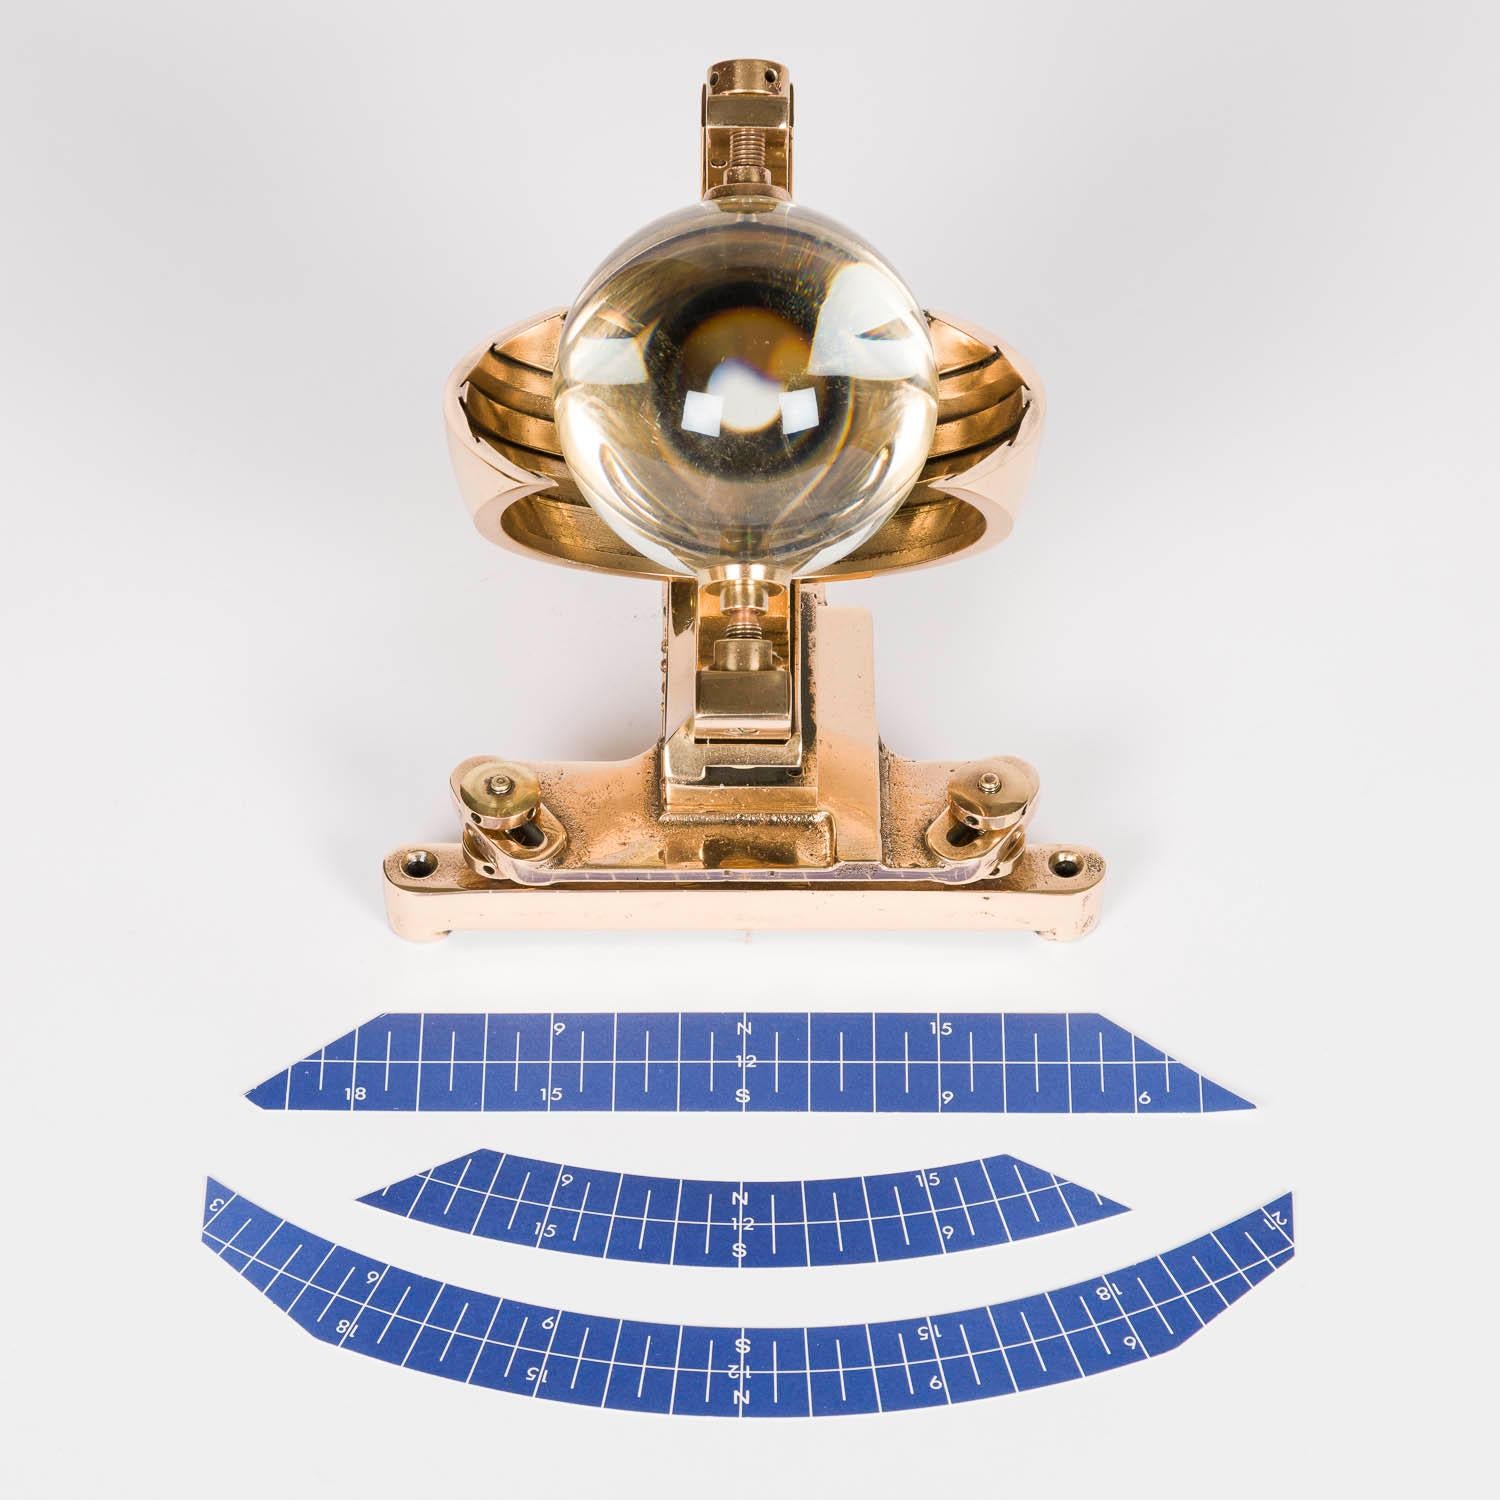 Enregistreur de soleil Campbell-Stokes du milieu du XXe siècle, par Casella & Co, Londres.

Modèle : Mk III C 45- 65 (latitudes 45° - 65°, Nord ou Sud). Sphère de verre de 4 pouces.

Numéro de série : 6962

Marqué : CASELLA LONDON MADE IN ENGLAND